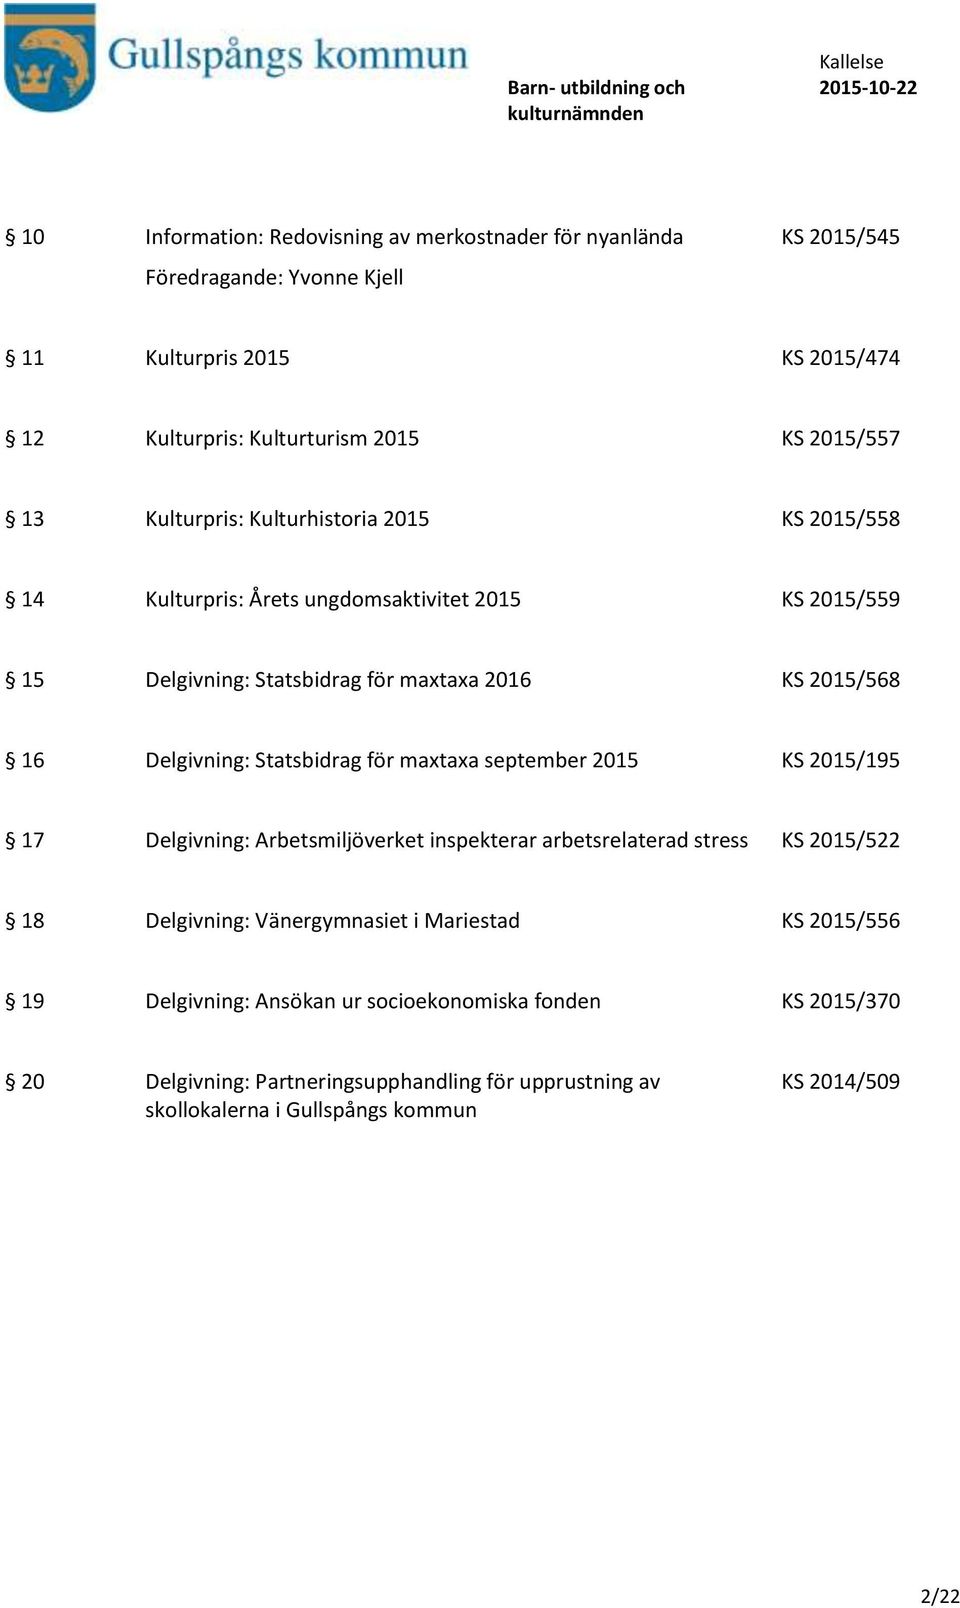 Statsbidrag för maxtaxa september 2015 KS 2015/195 17 Delgivning: Arbetsmiljöverket inspekterar arbetsrelaterad stress KS 2015/522 18 Delgivning: Vänergymnasiet i Mariestad